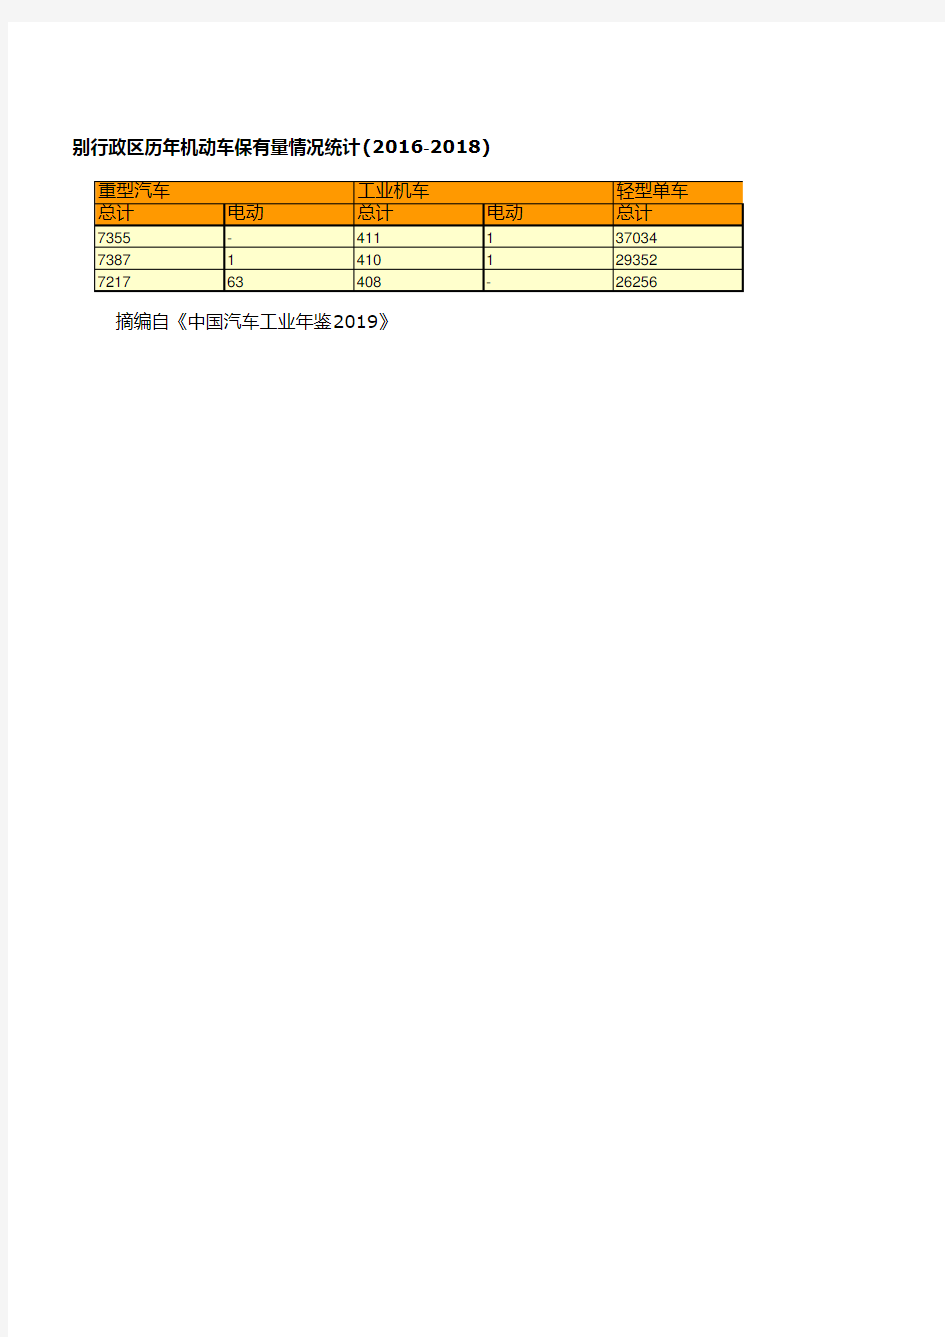 全国各省市自治区汽车企业年鉴数据：澳门特别行政区历年机动车保有量情况统计(2016-2018)